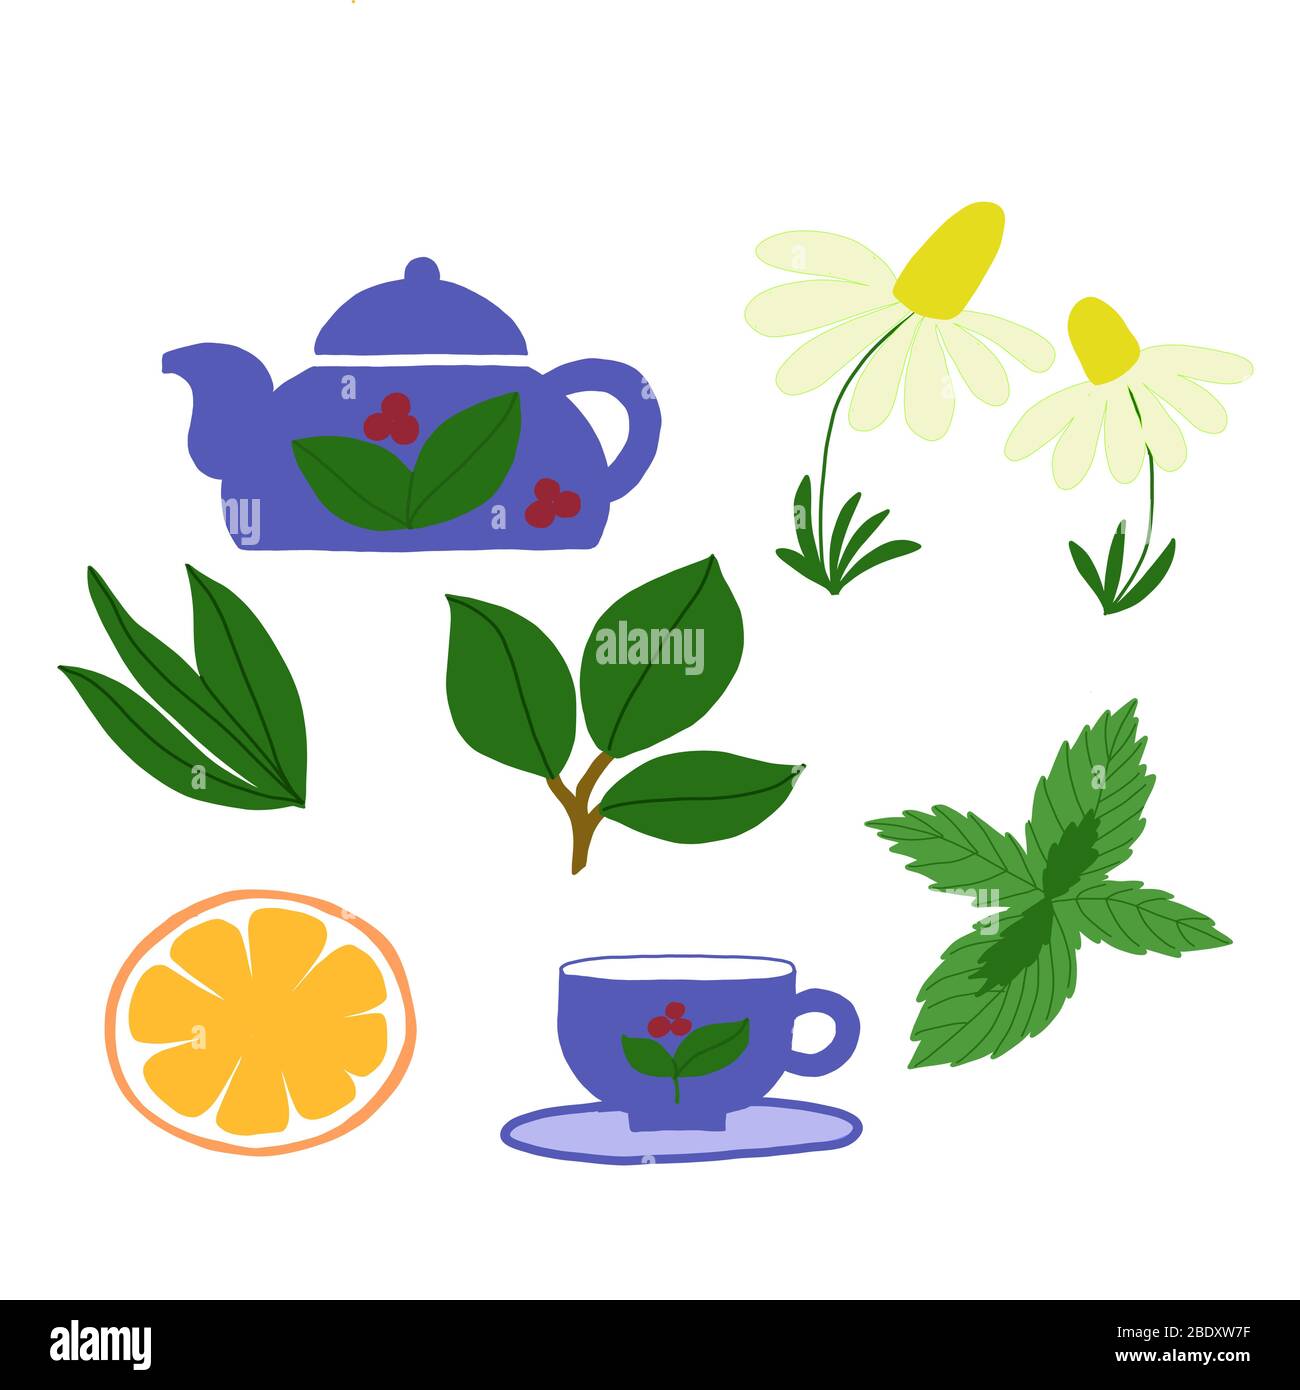 Vektor-Set auf einem weißen Hintergrund einer Tasse, Teekanne, Teeblätter, Minze und Kamille. Für Menü-Design, Verpackung, Tapete Stock Vektor